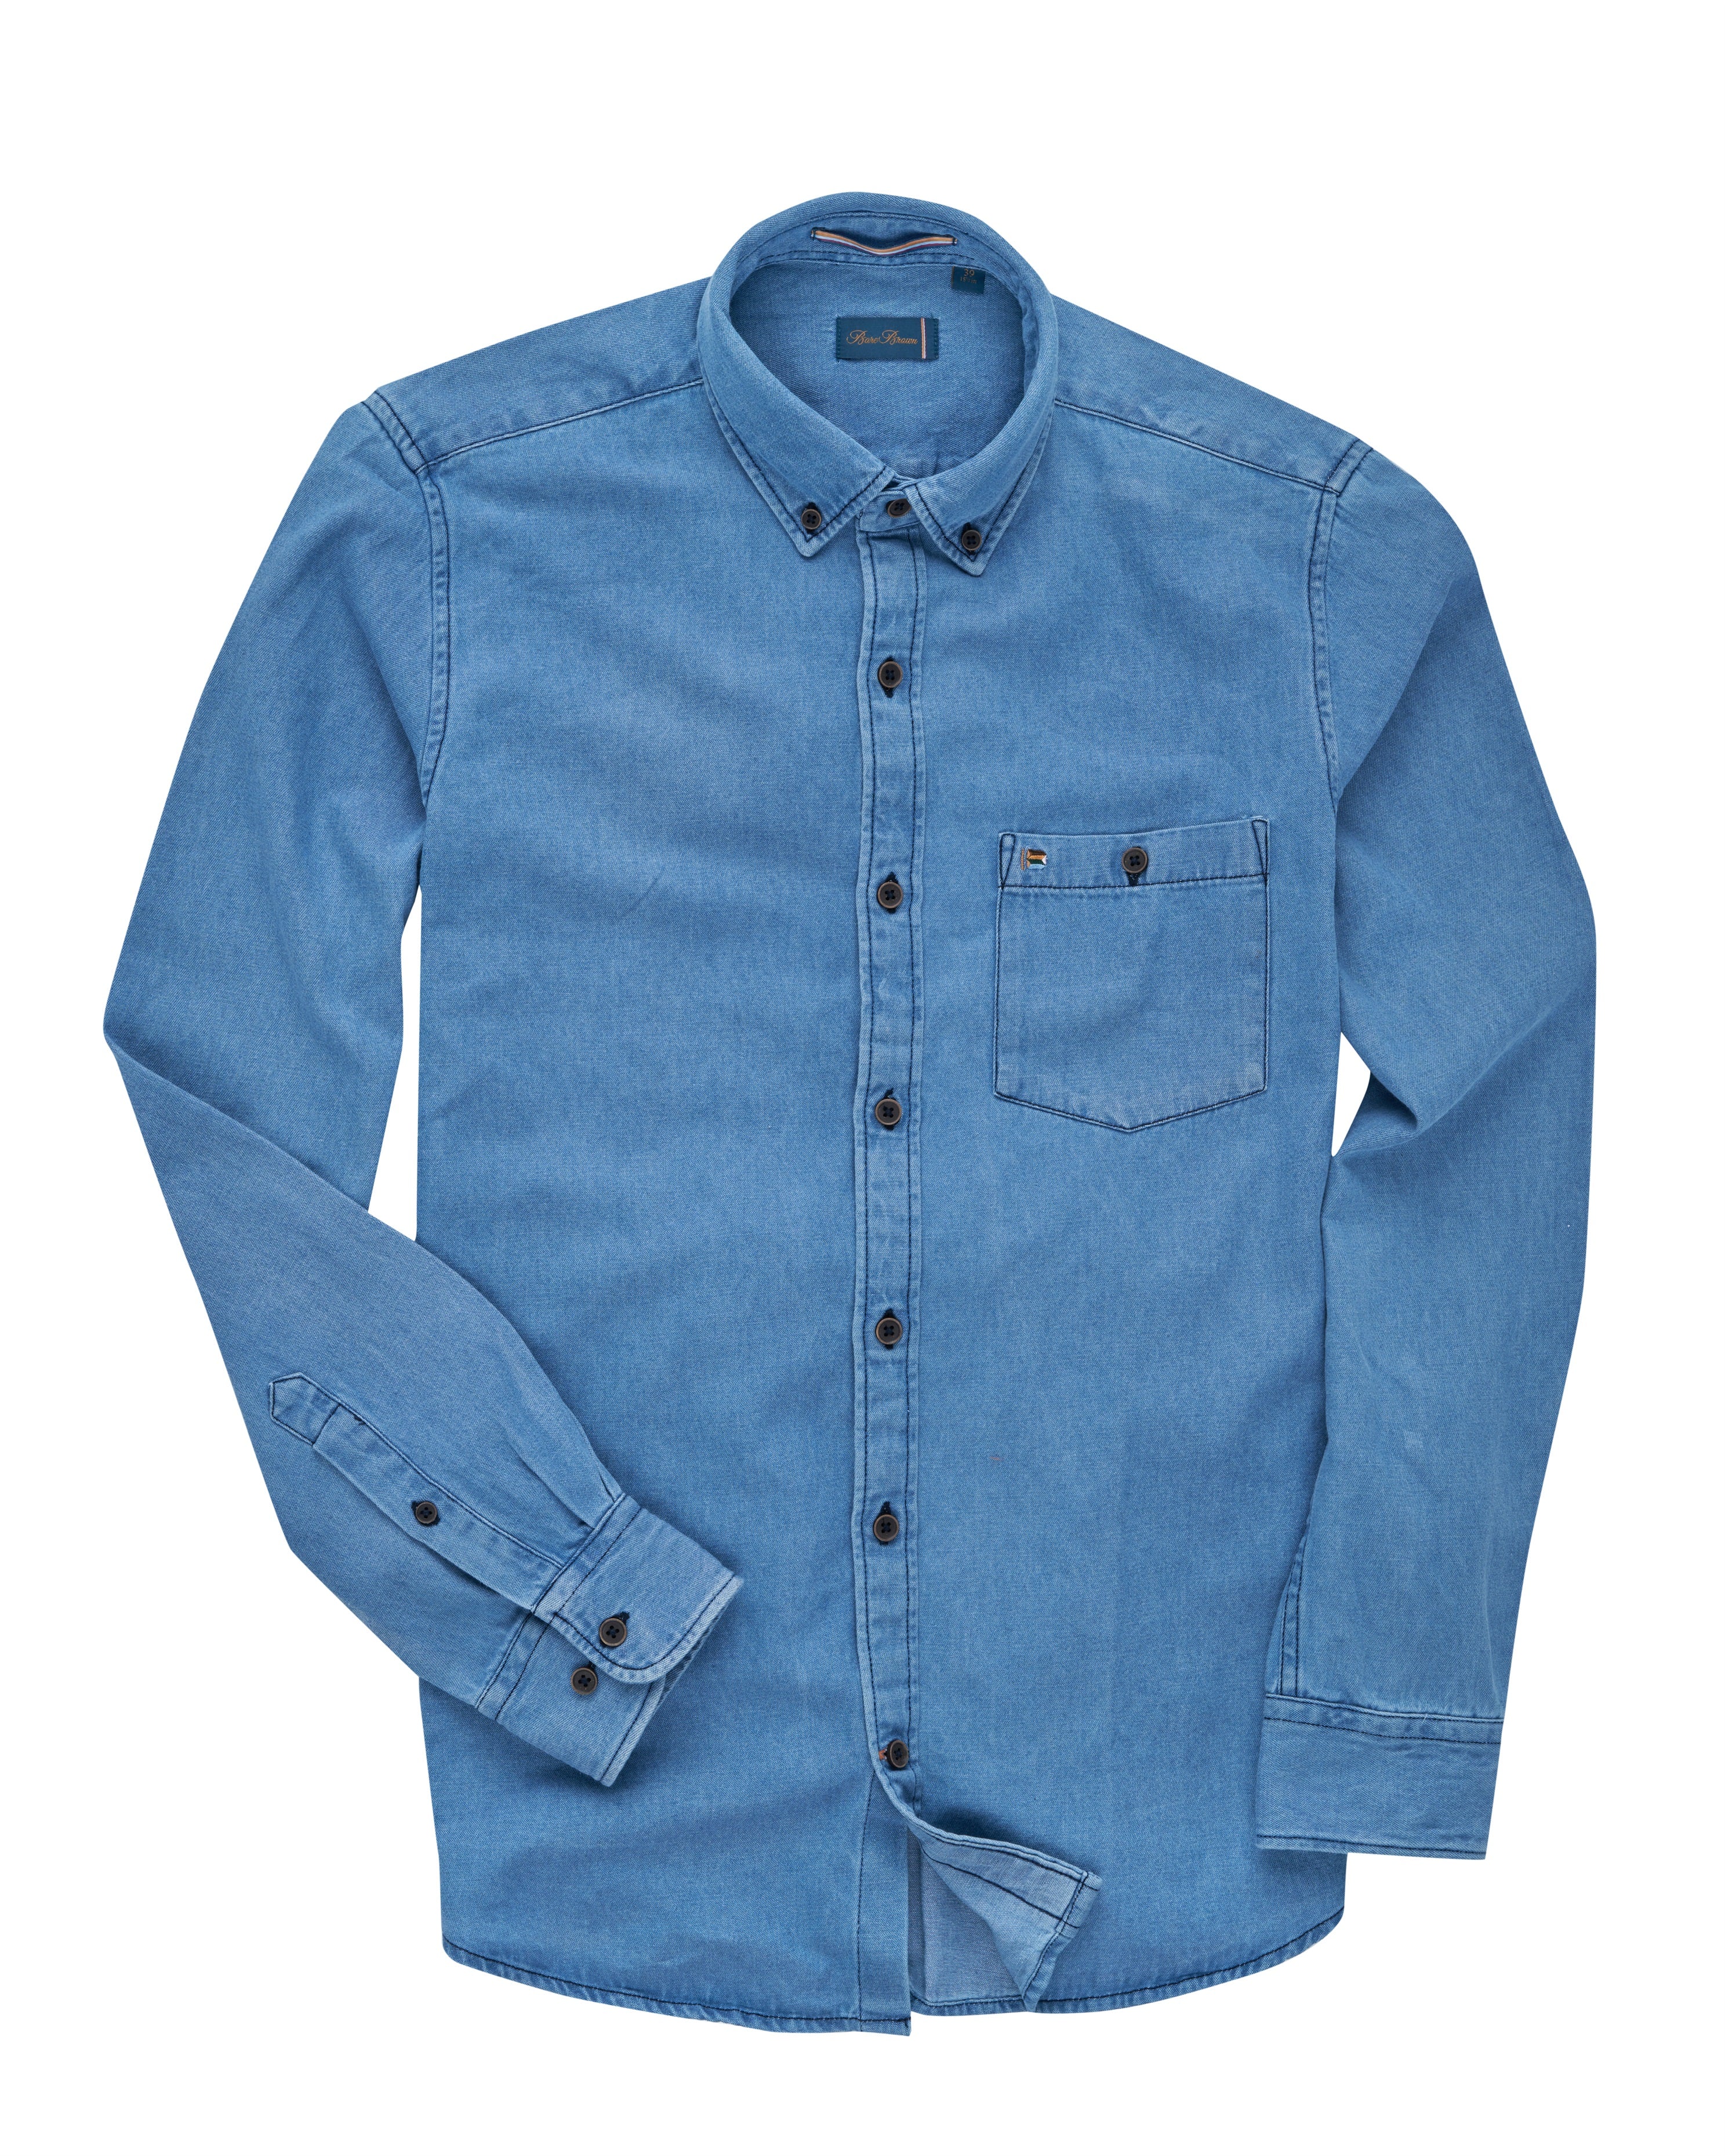 Vintage Lee Jeans Denim Shirt Jacket Made In USA Size L R Lee 70s | eBay